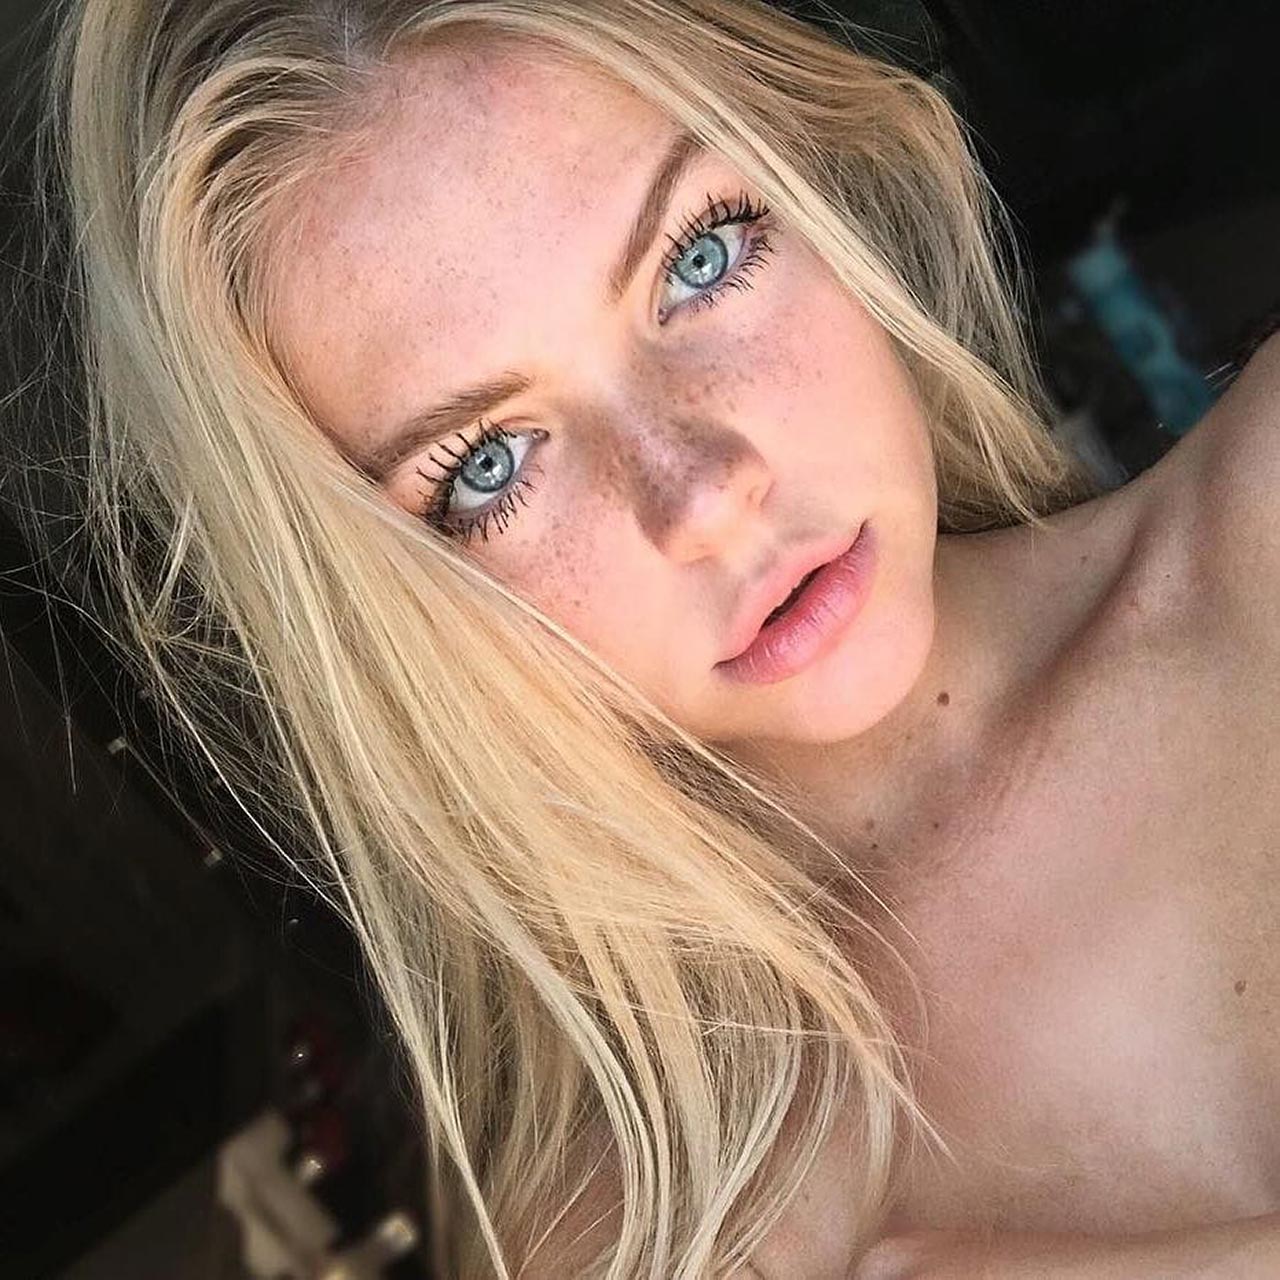 Annika boron sexy